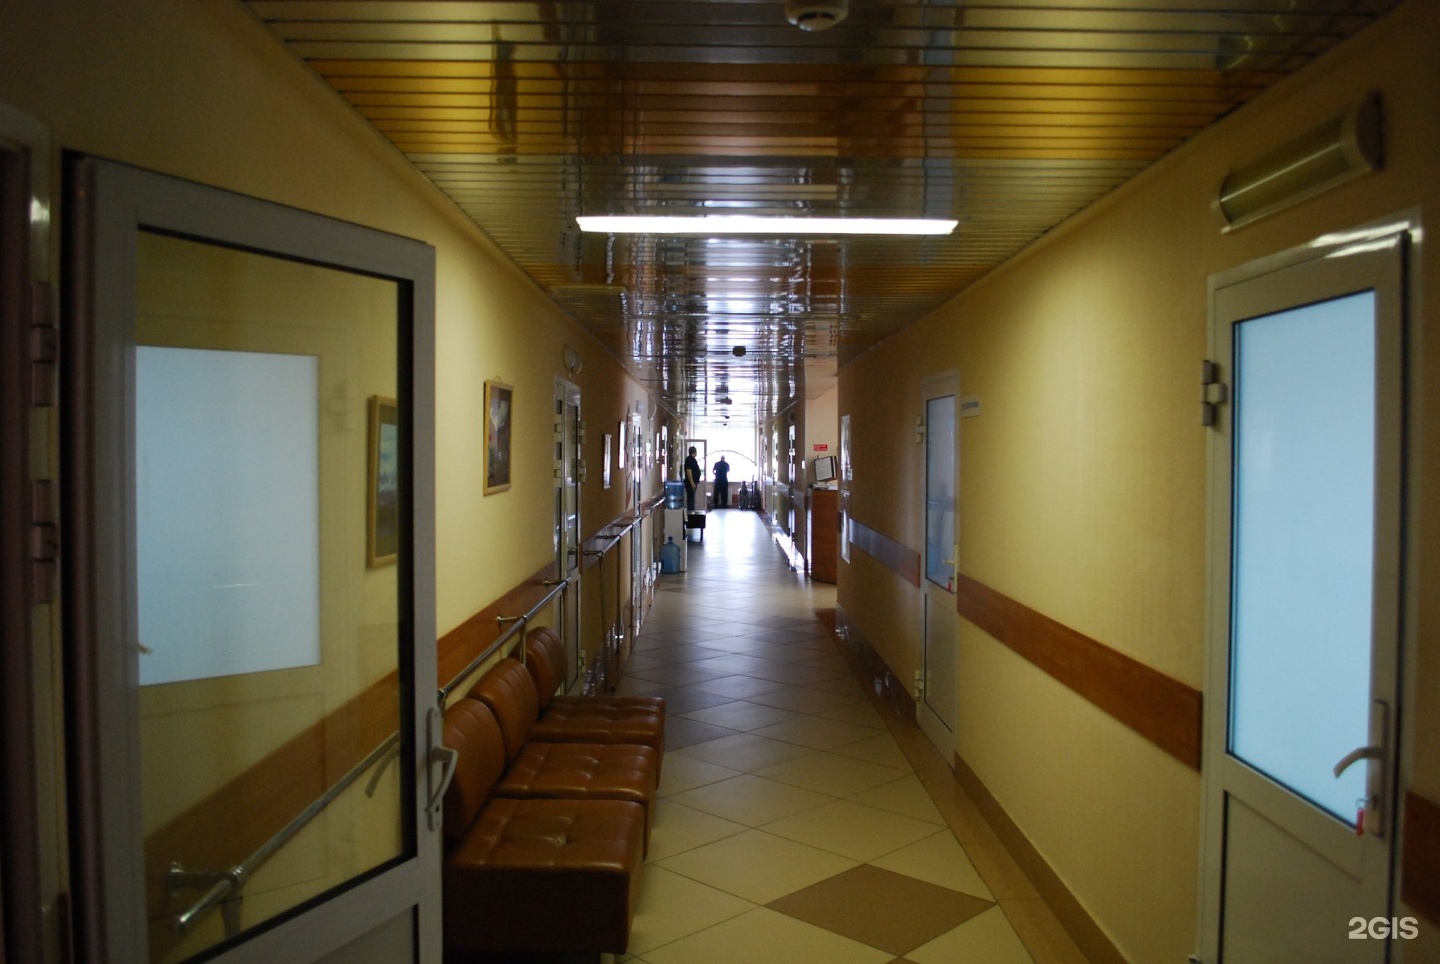 Госпиталь кемерово регистратура. Госпиталь ветеранов Кемерово. Кемерово 50 лет октября 10 госпиталь ветеранов войн. Фото в госпитале для ветеранов войны в Кемерово.